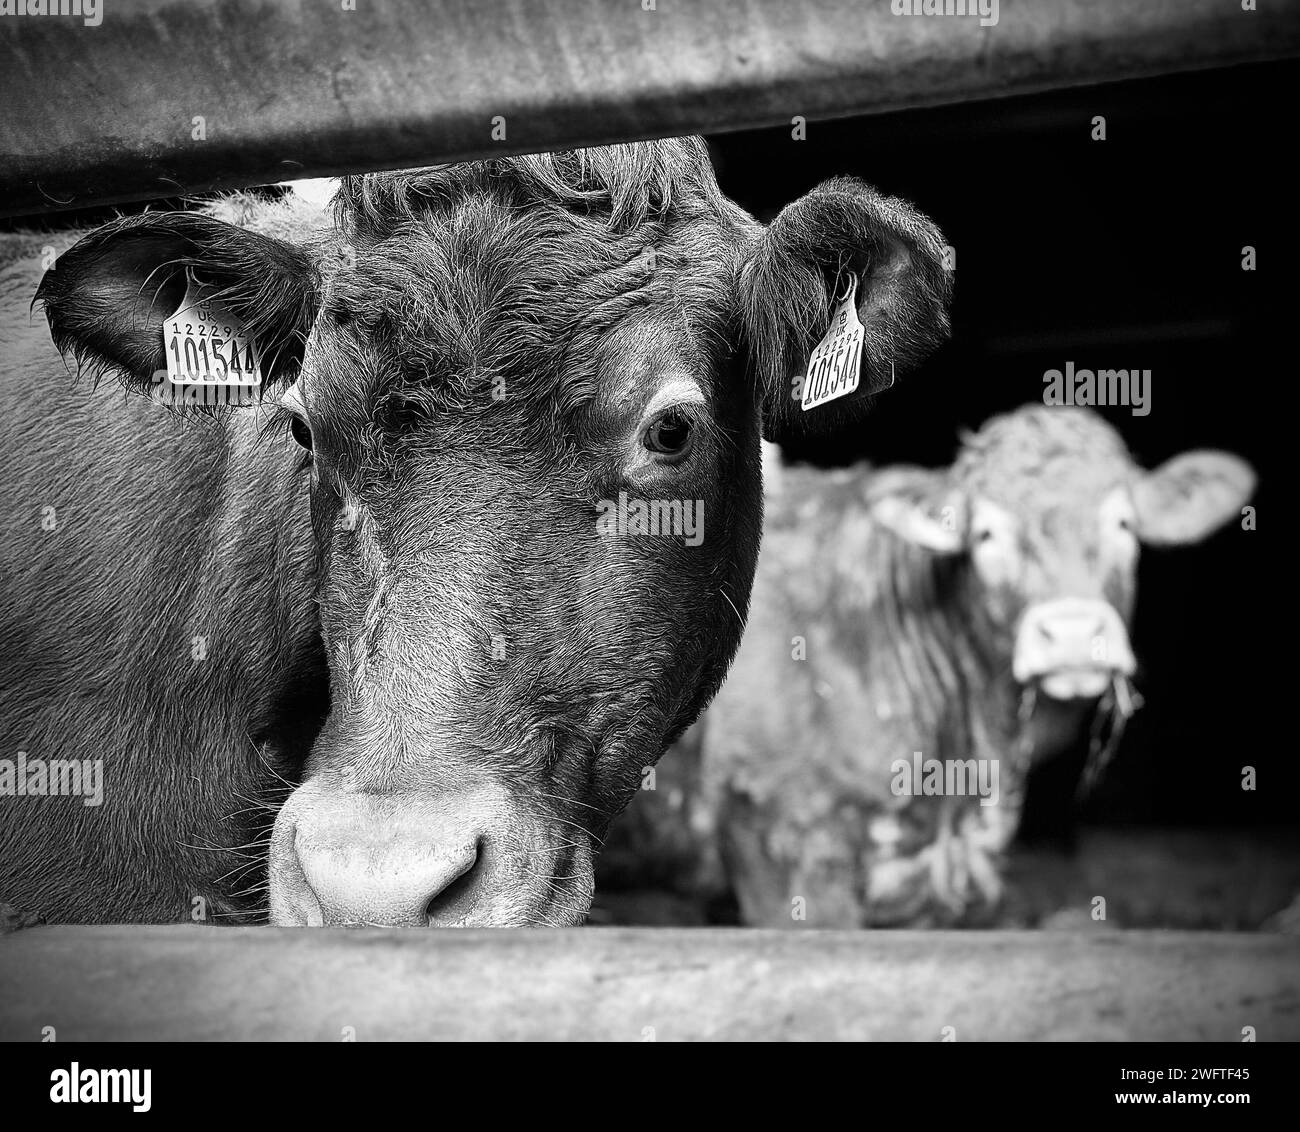 Vaches Limousin dans une ferme dans le North Yorkshire, Royaume-Uni. Crédit James Hind/Alamy. Banque D'Images